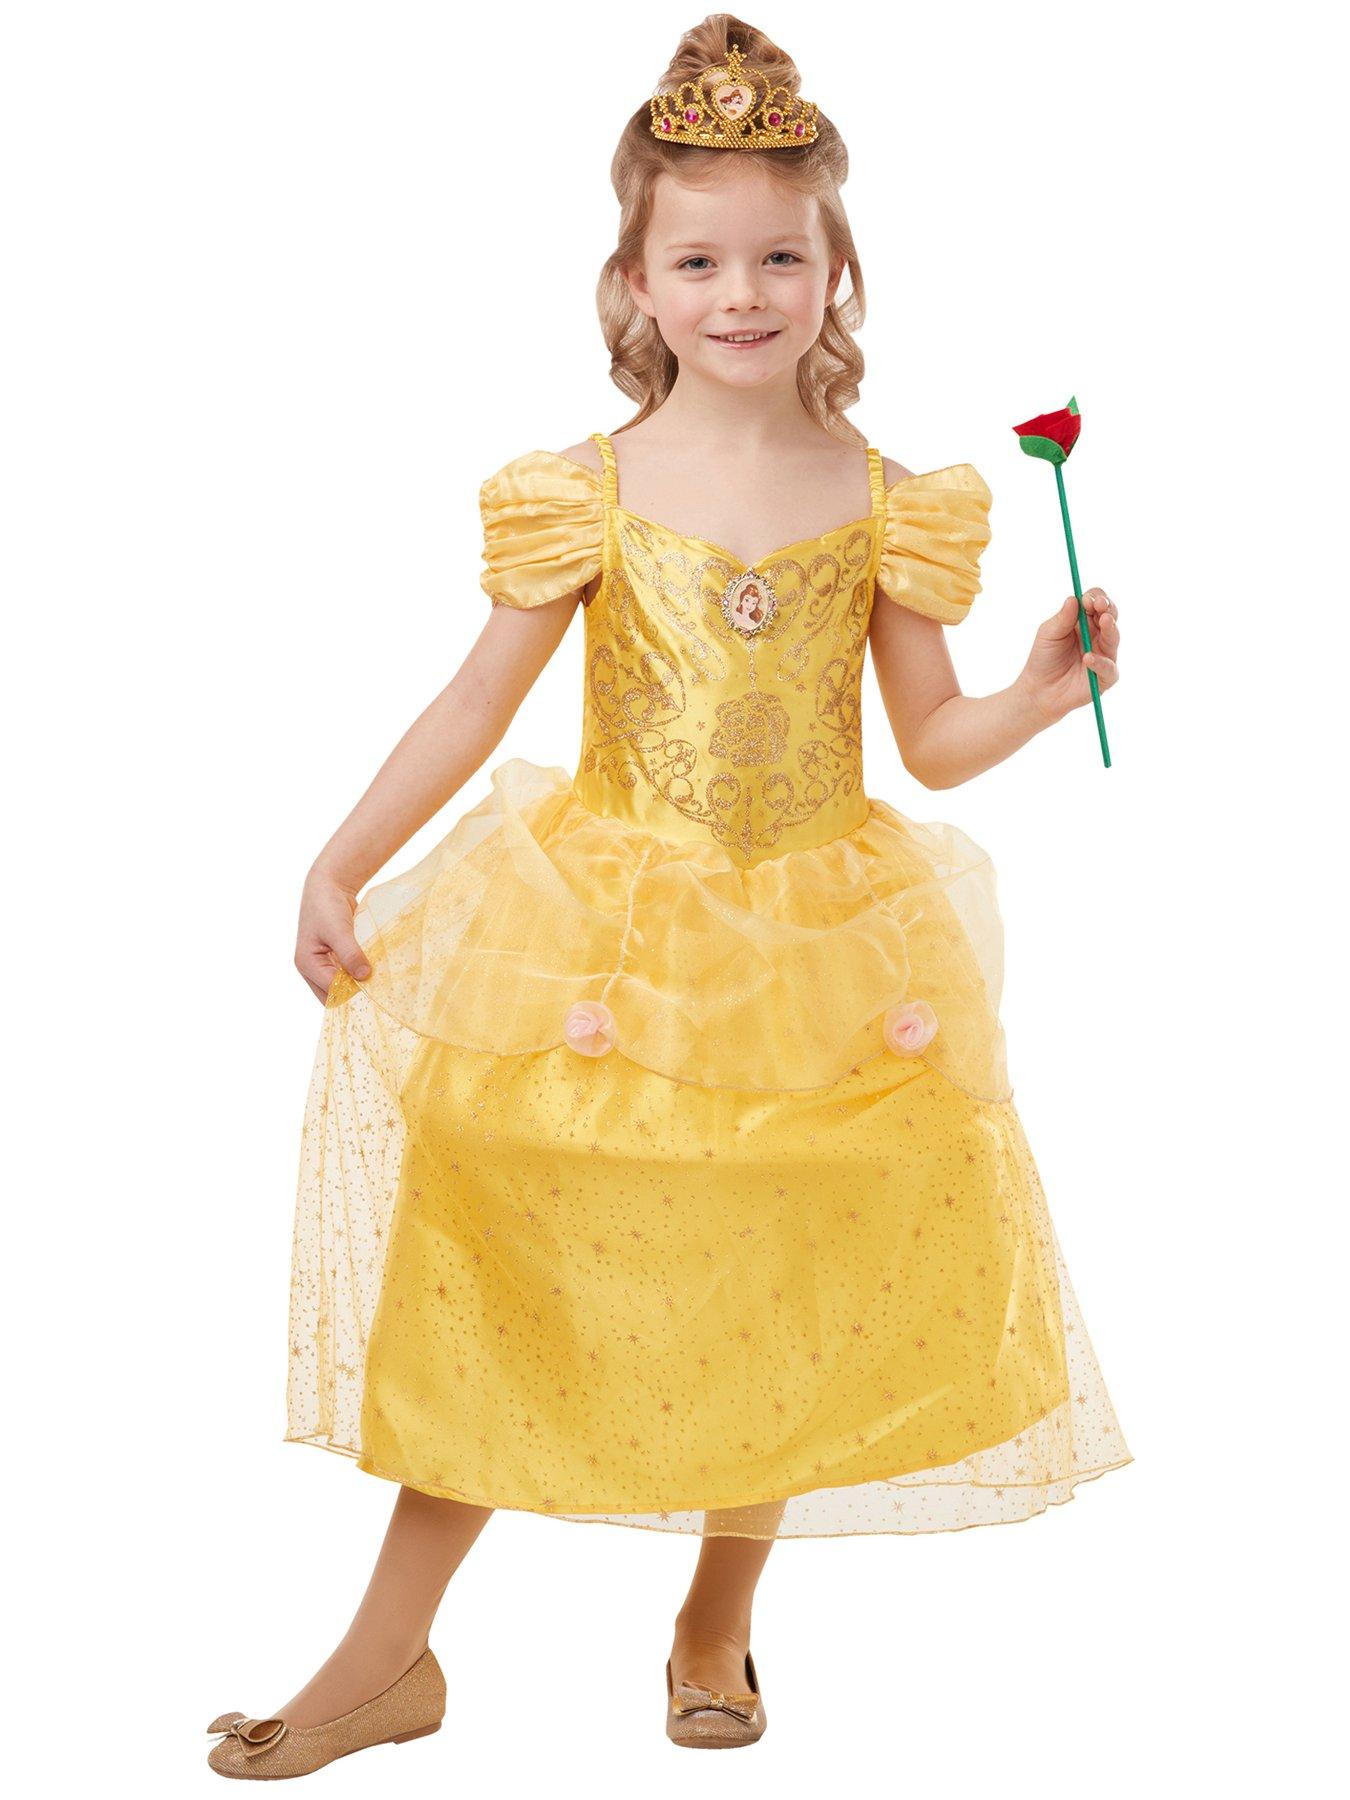 belle dressing up dress